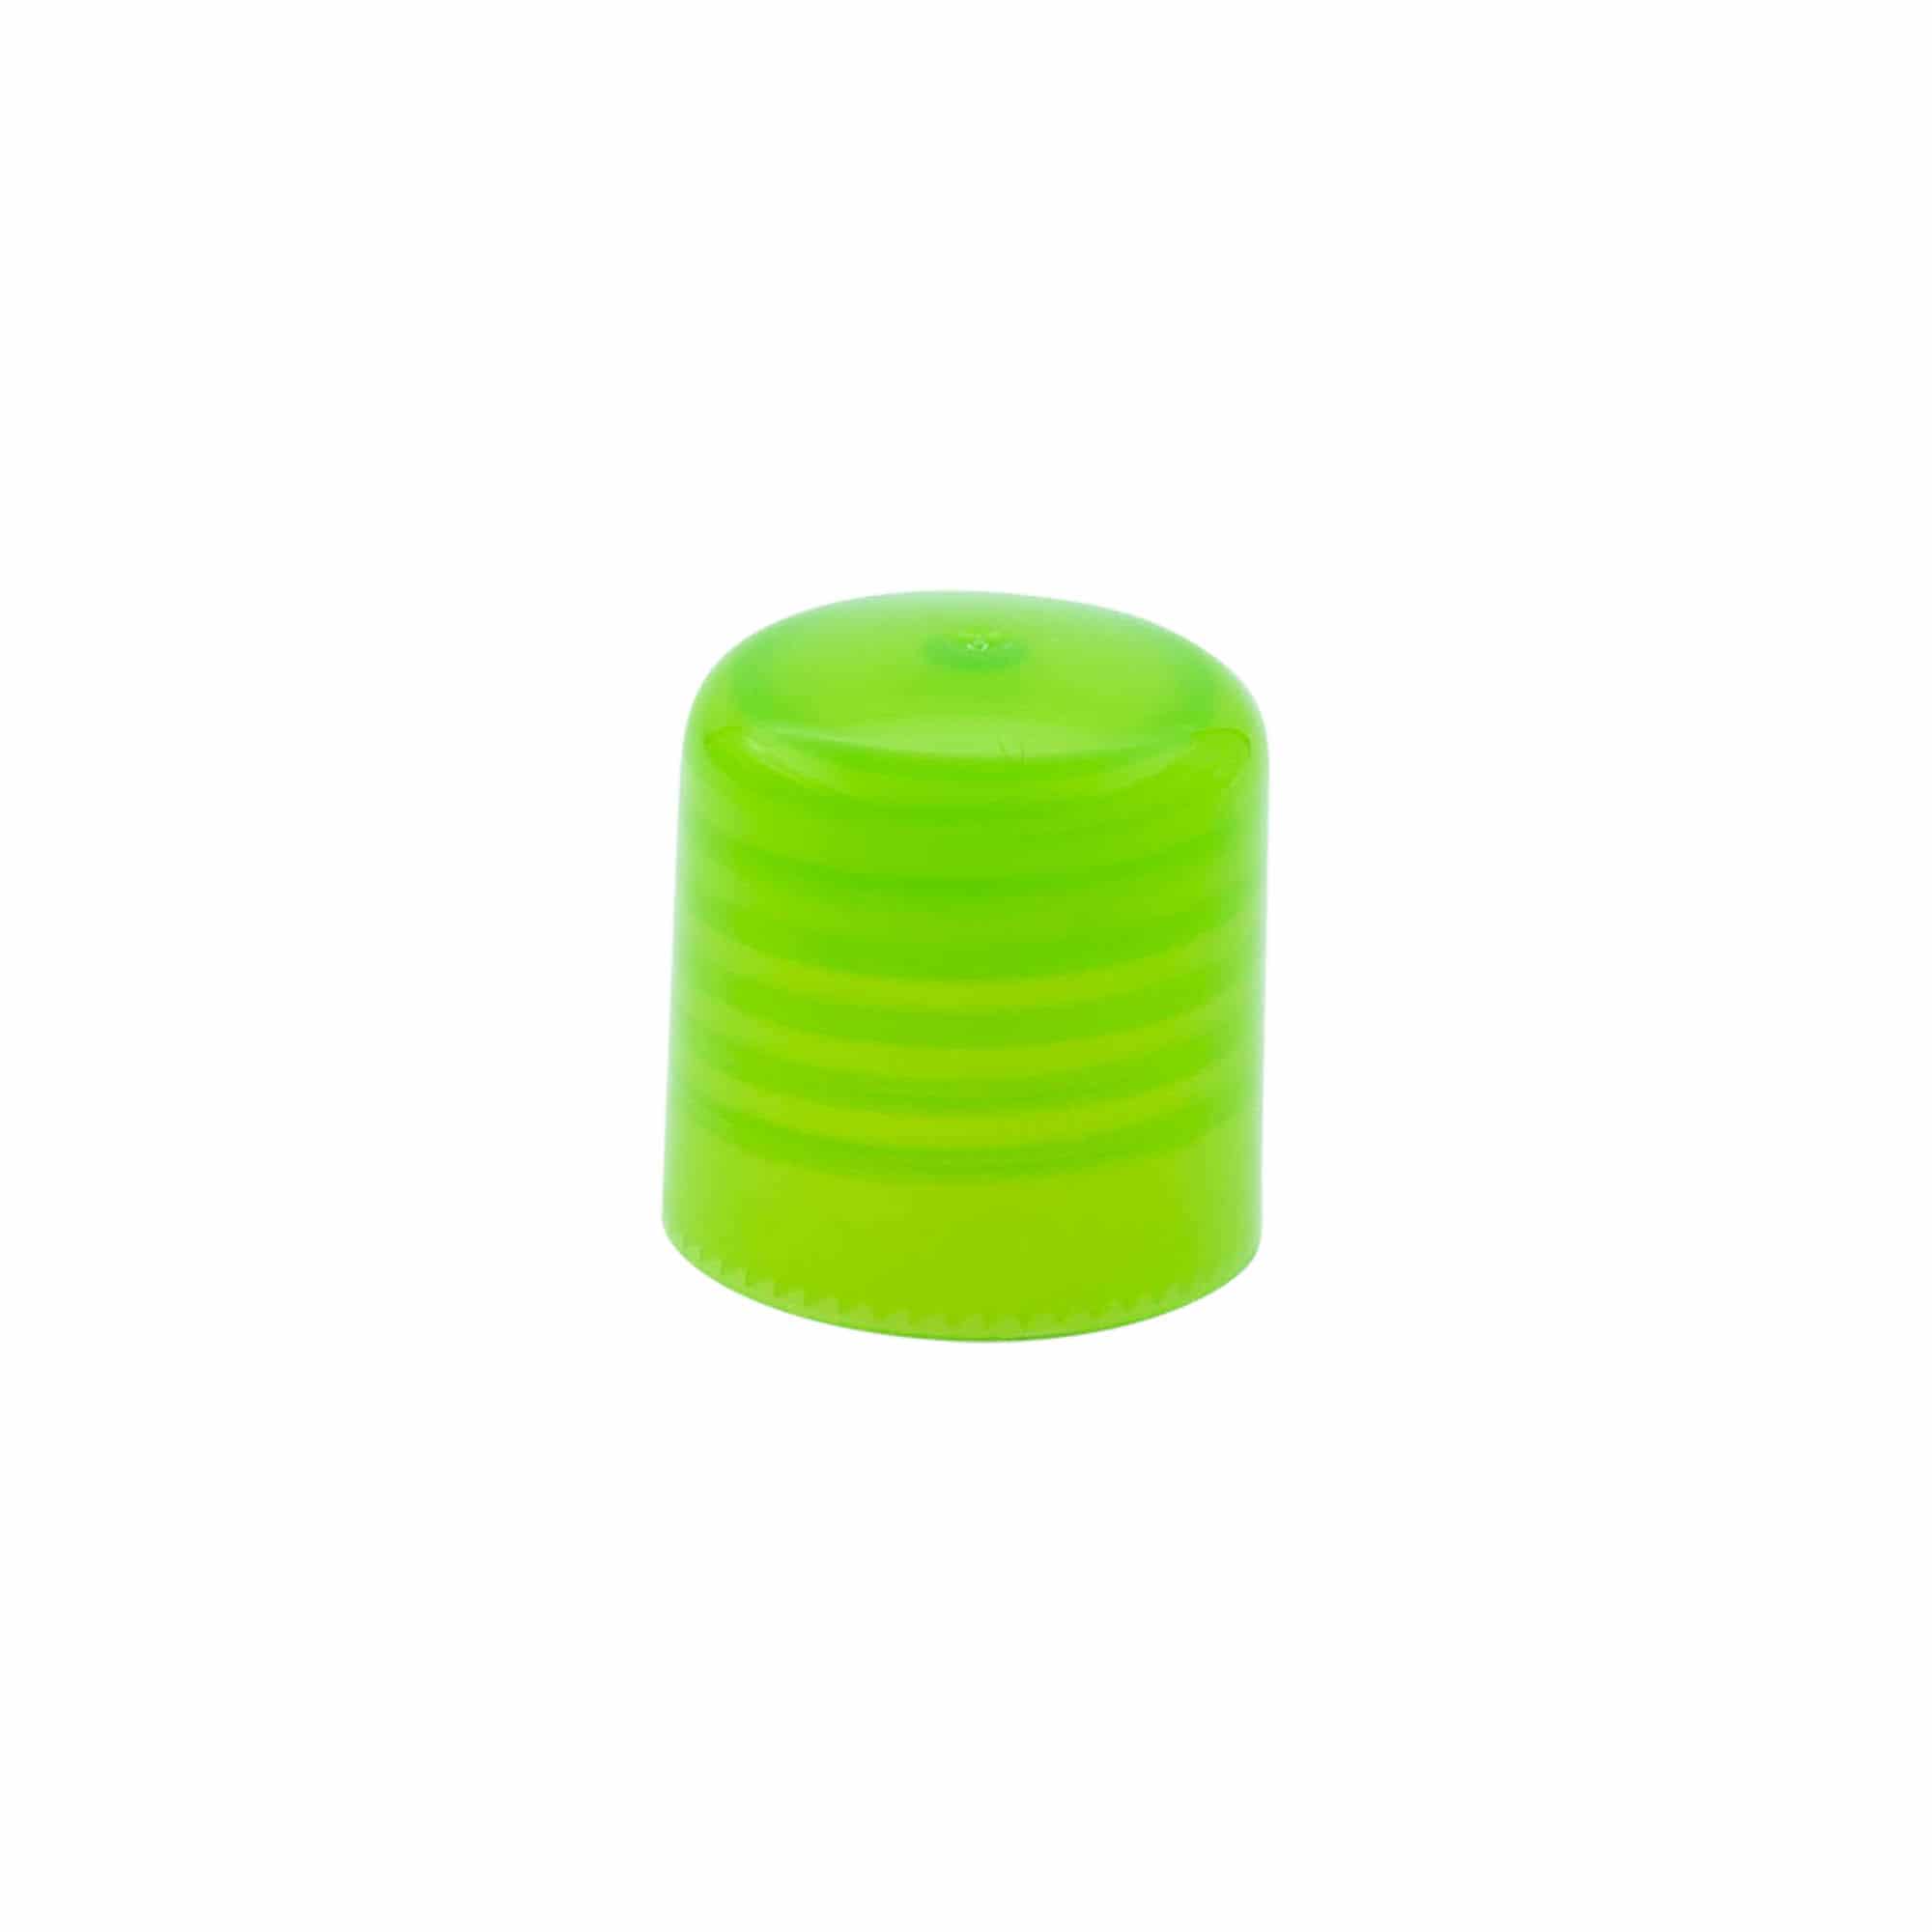 Skruvkapsel med sprayinsats, PP-plast, grön, för mynning: GPI 24/410